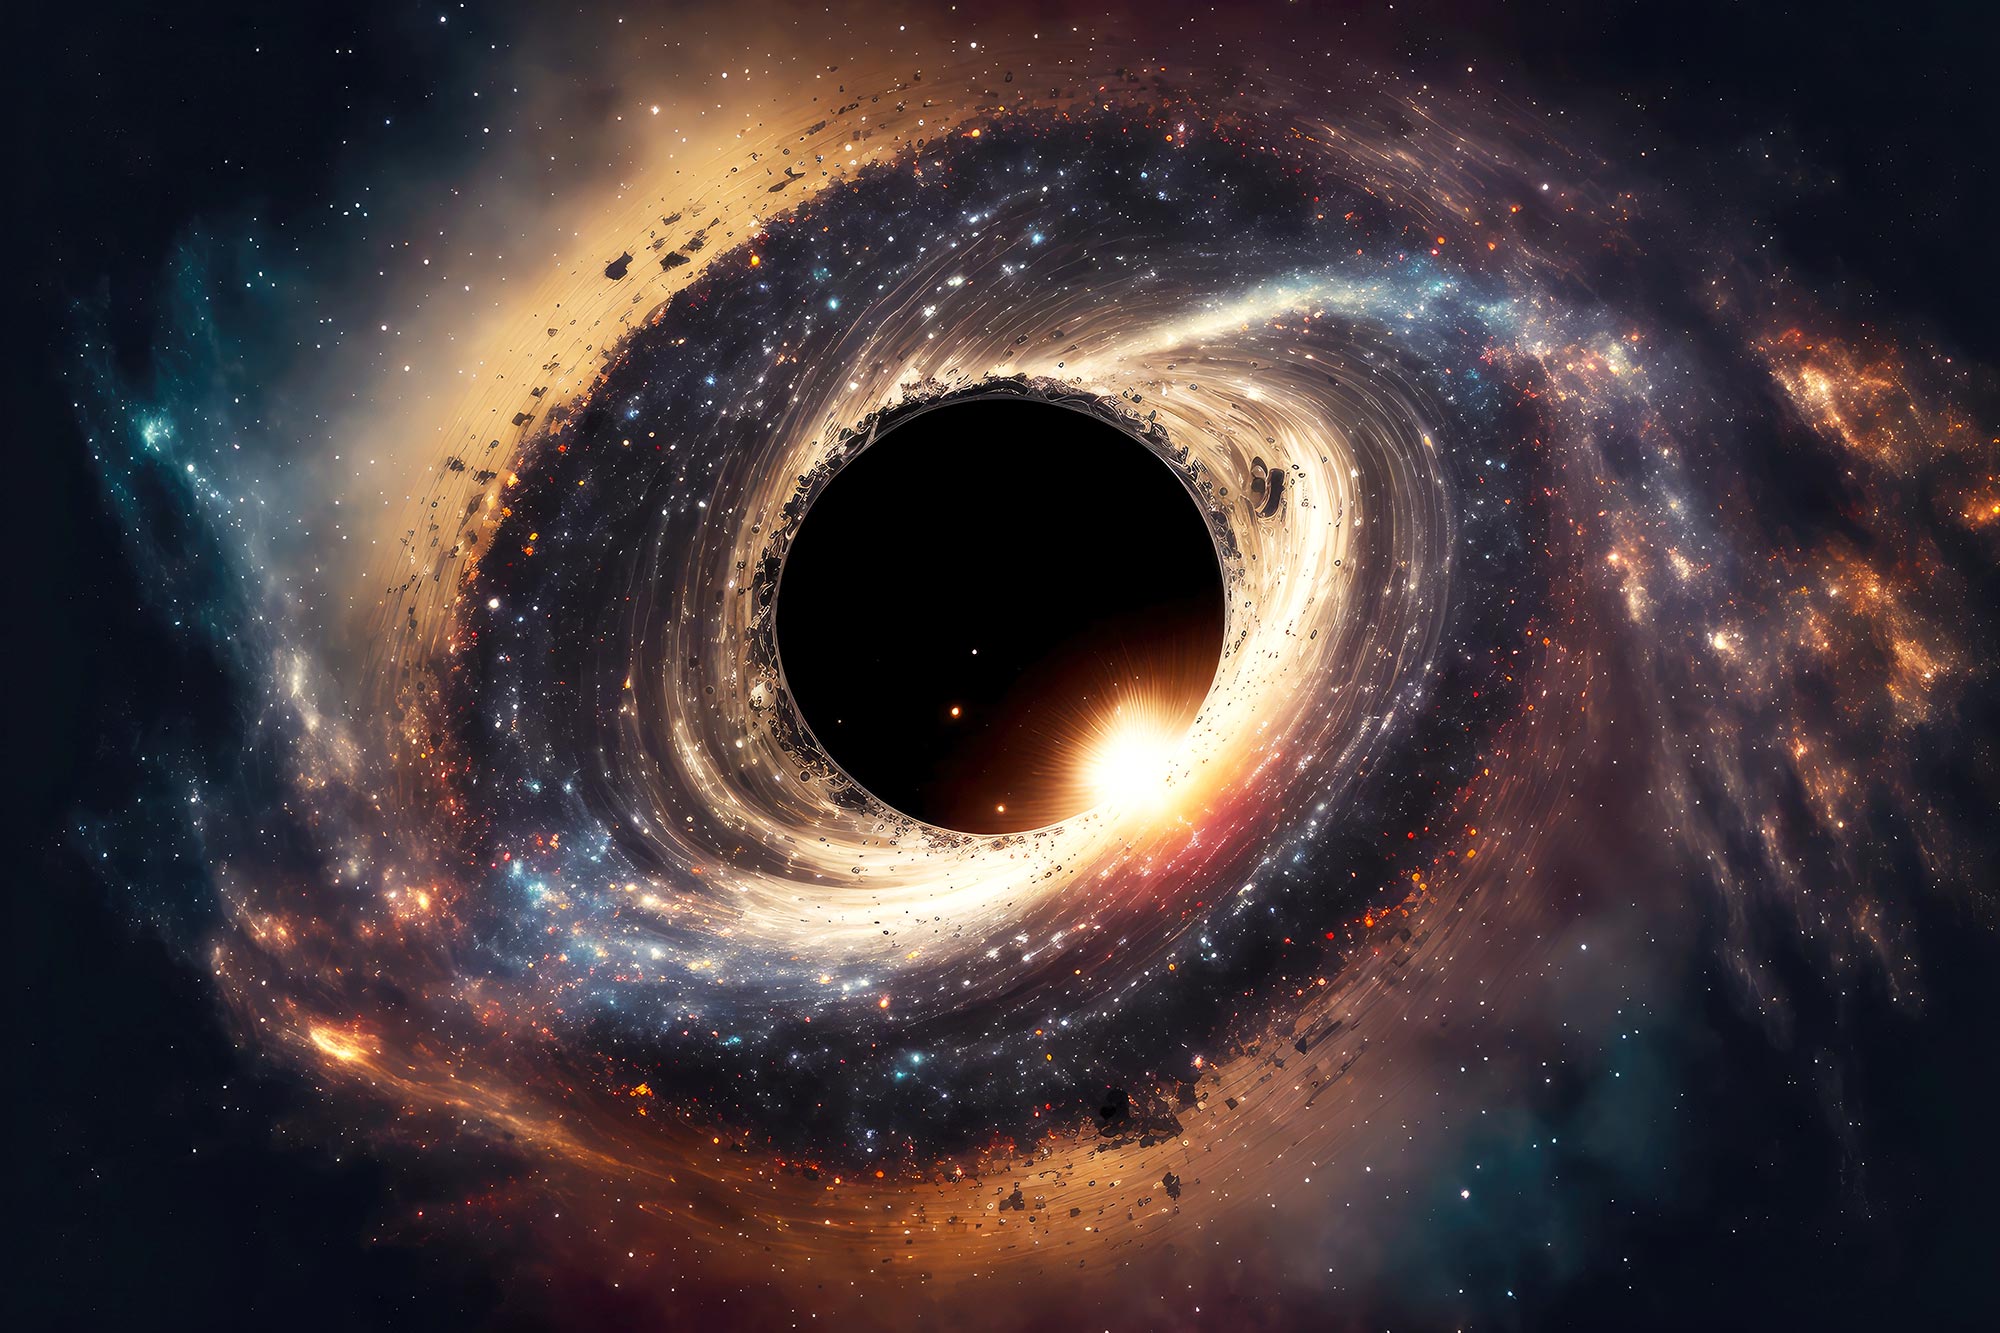 يكتشف علماء الفلك ثقبًا أسودًا أقرب إلى الأرض من أي وقت مضى